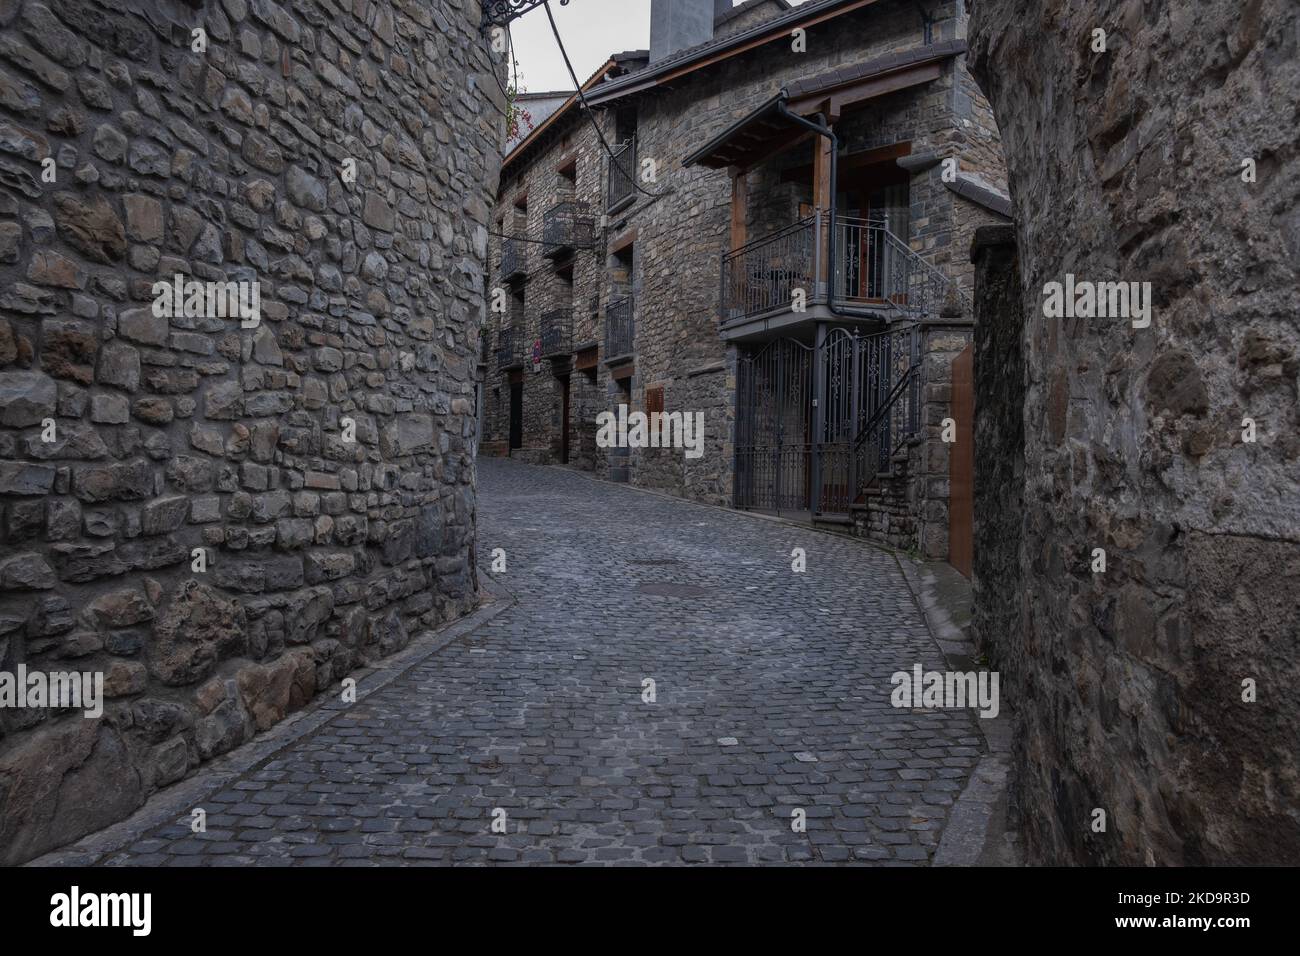 Una strada stretta tra vecchi edifici medievali in pietra nel comune di Torla-Ordesa a Huesca, Spagna Foto Stock